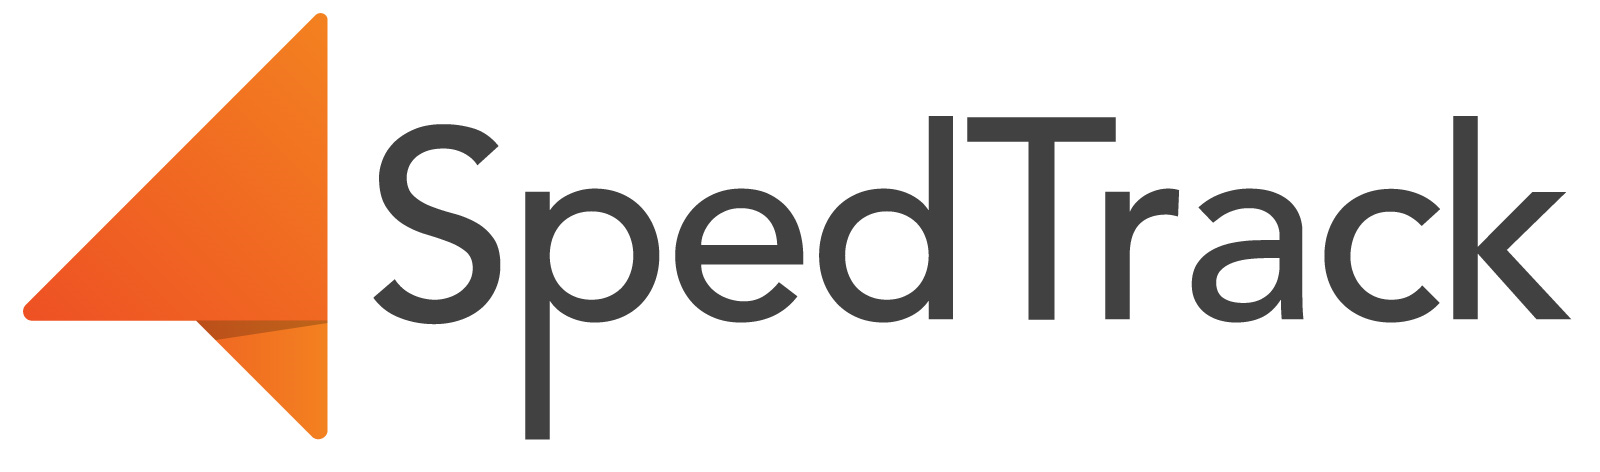 SpedTrack Logo